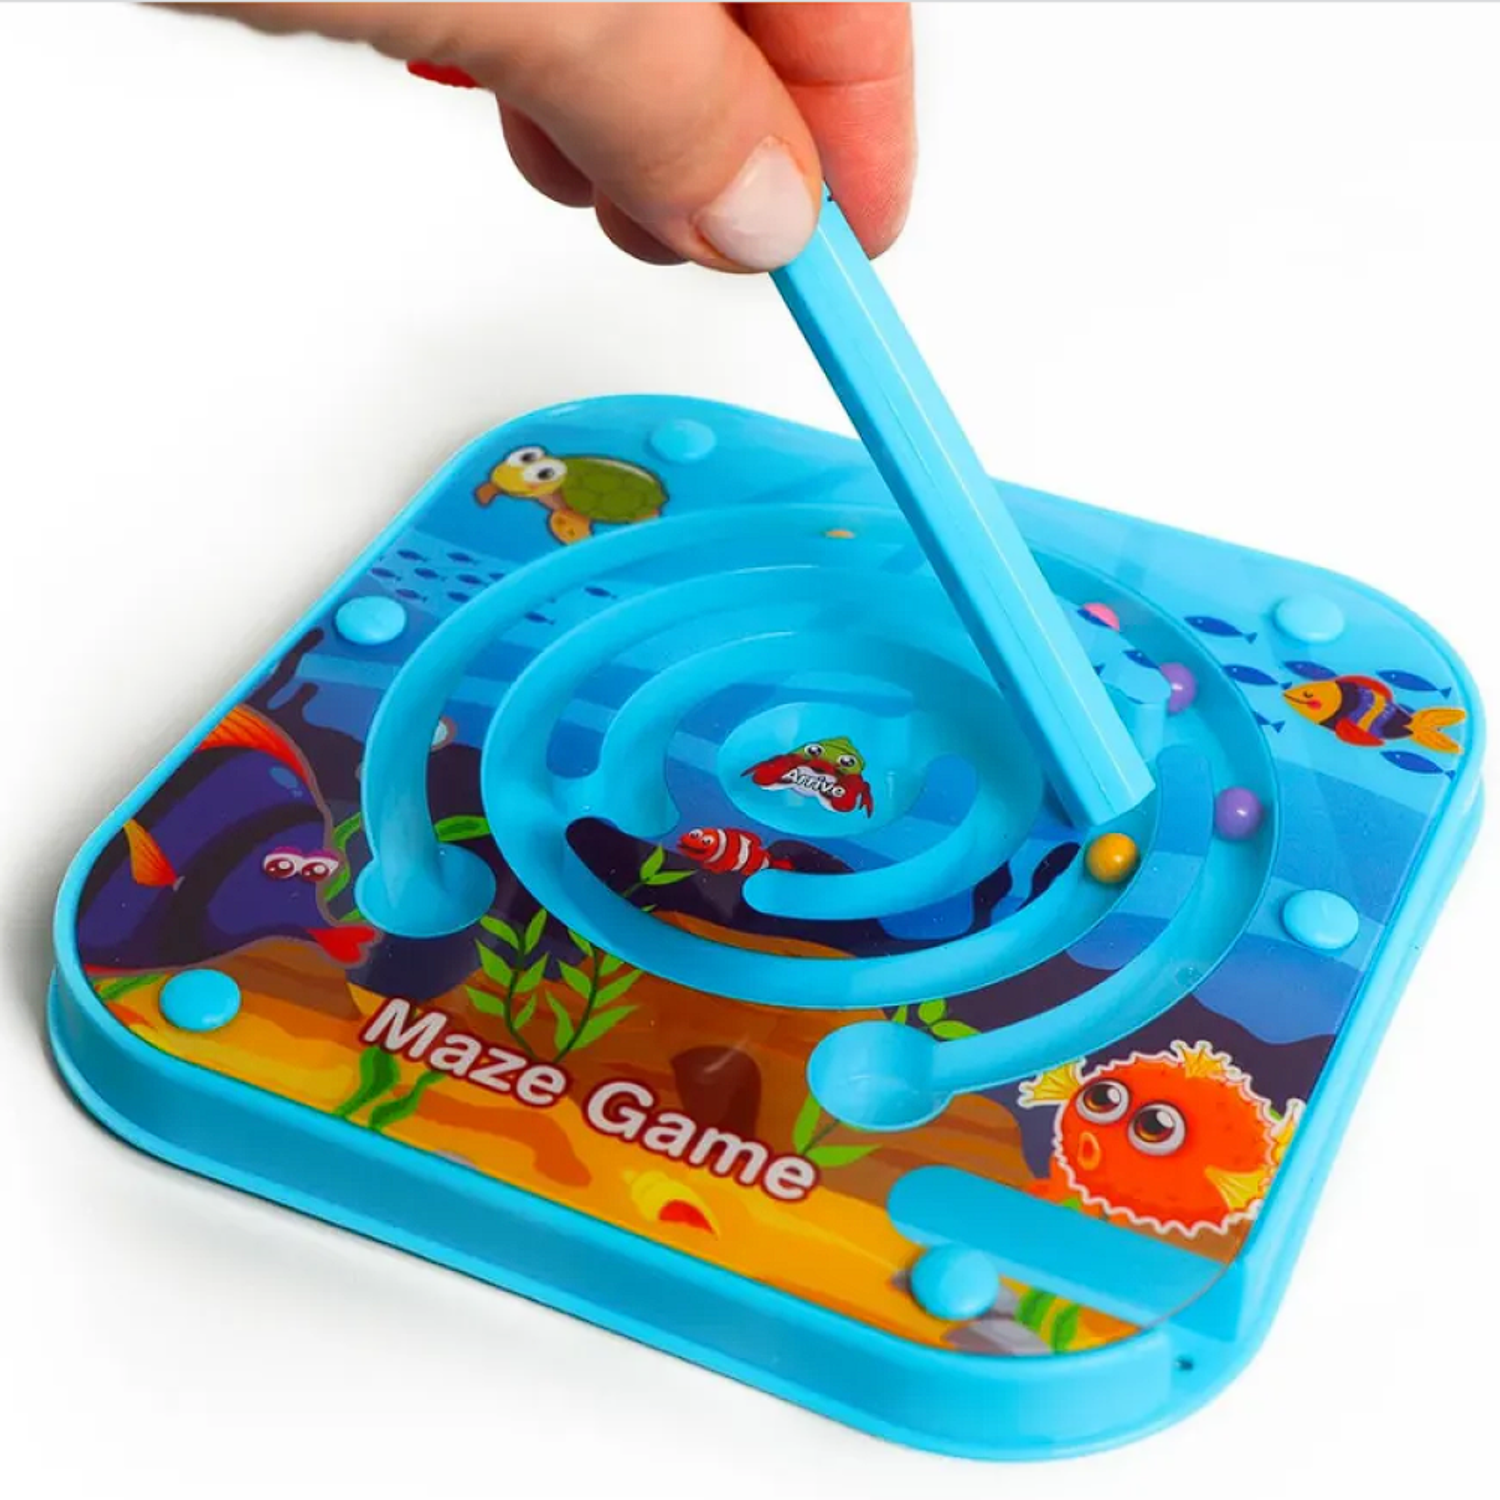 Развивающая игрушка Kribly Boo Головоломка Лабиринт магнитный. Синий - фото 2